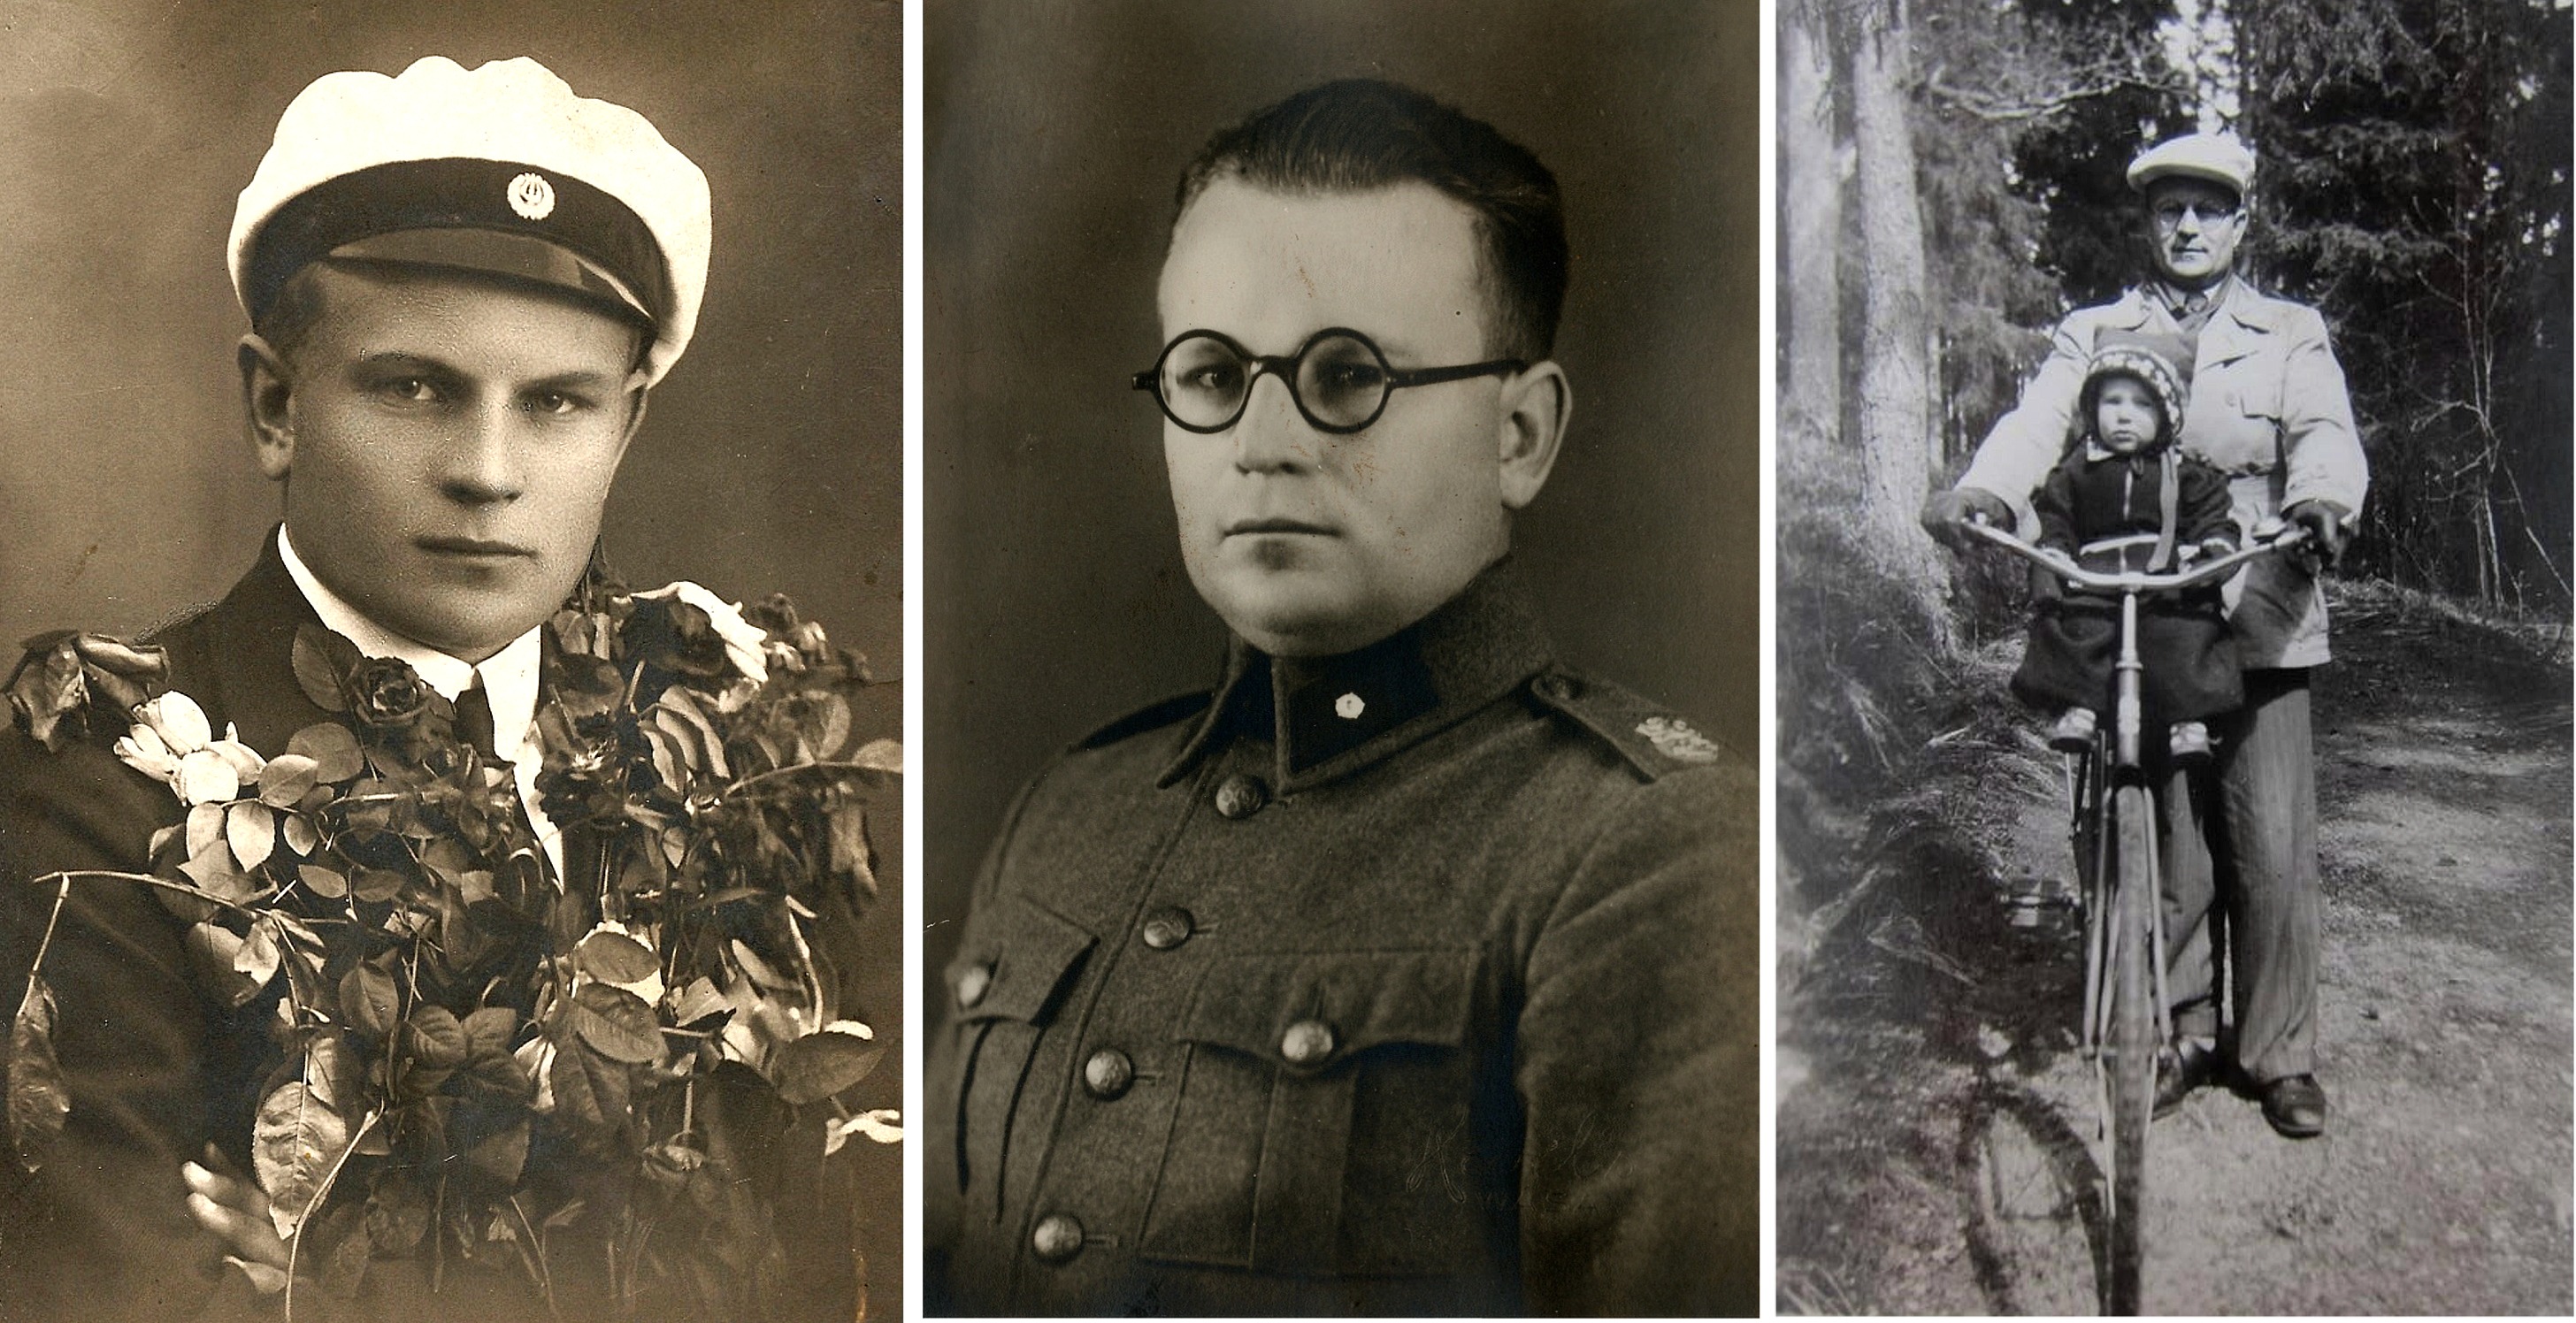 Här 3 foton av Bertel i olika livsskeden, först som student från samskolan i Kristinestad, sedan fänrik i militären och till höger som pappa.